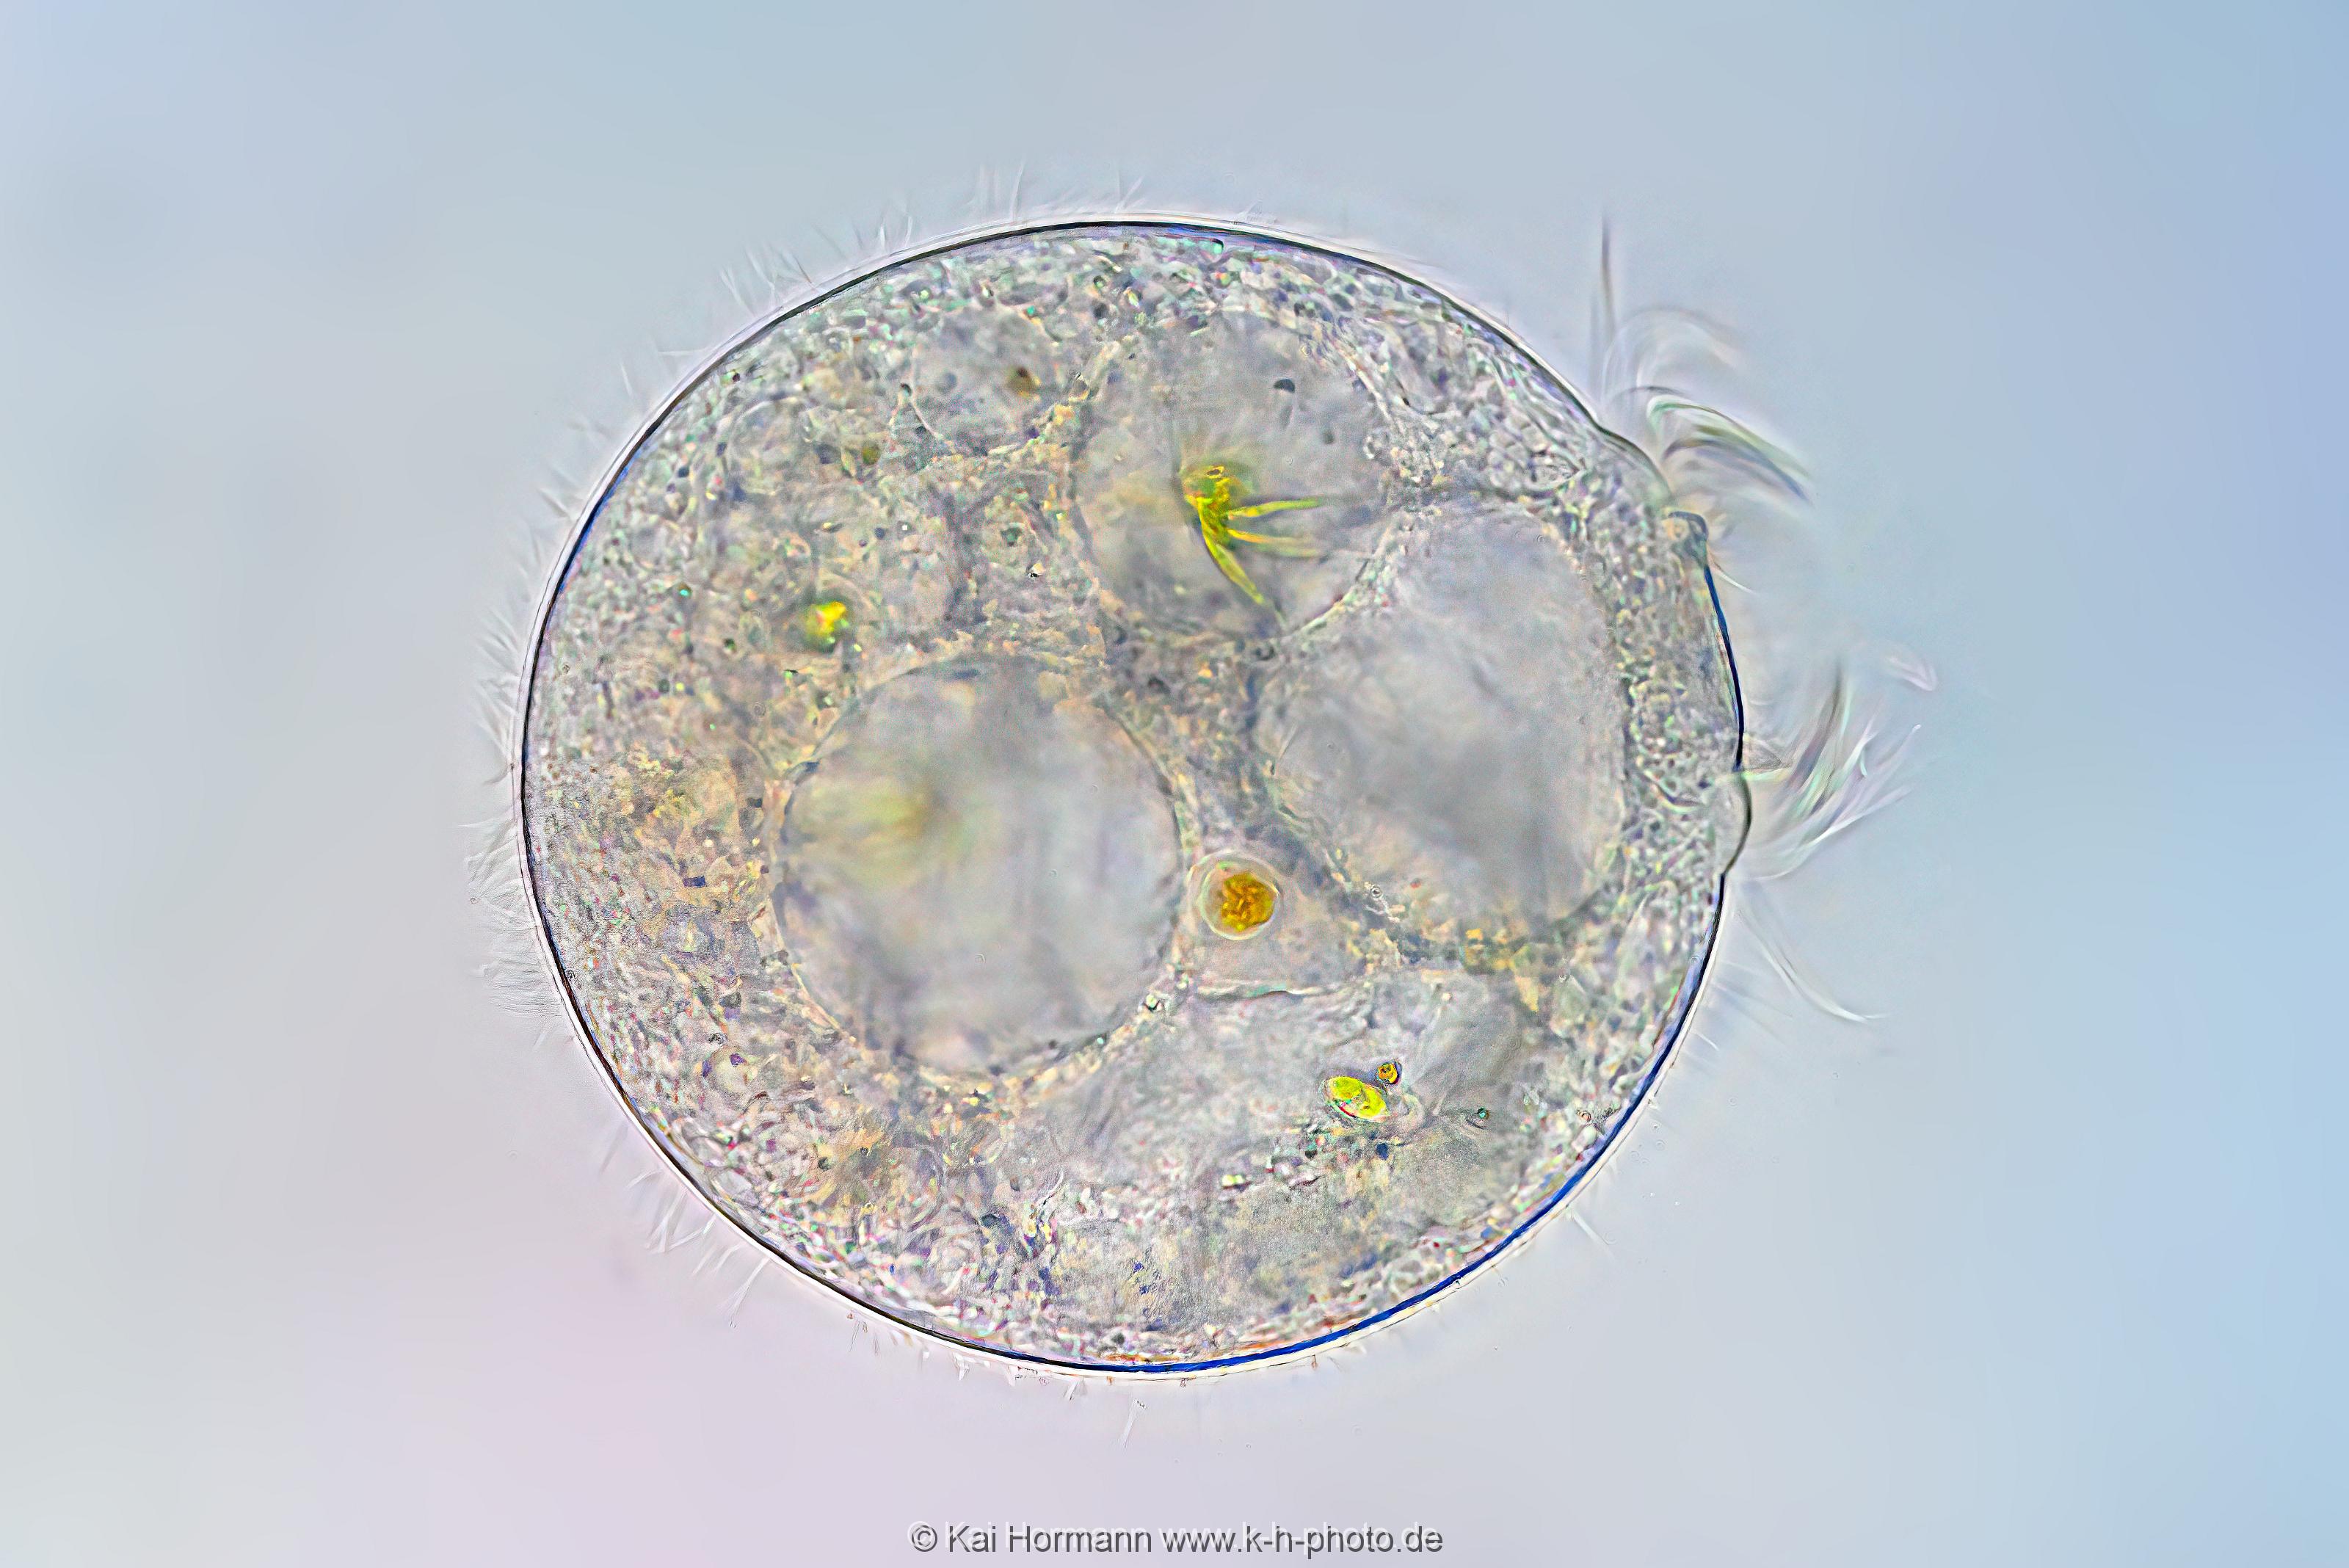 Wimpertierchen. Mikrofotografie: Mikroskopische Aufnahmen von Einzellern, Algen und Kleinstlebewesen.